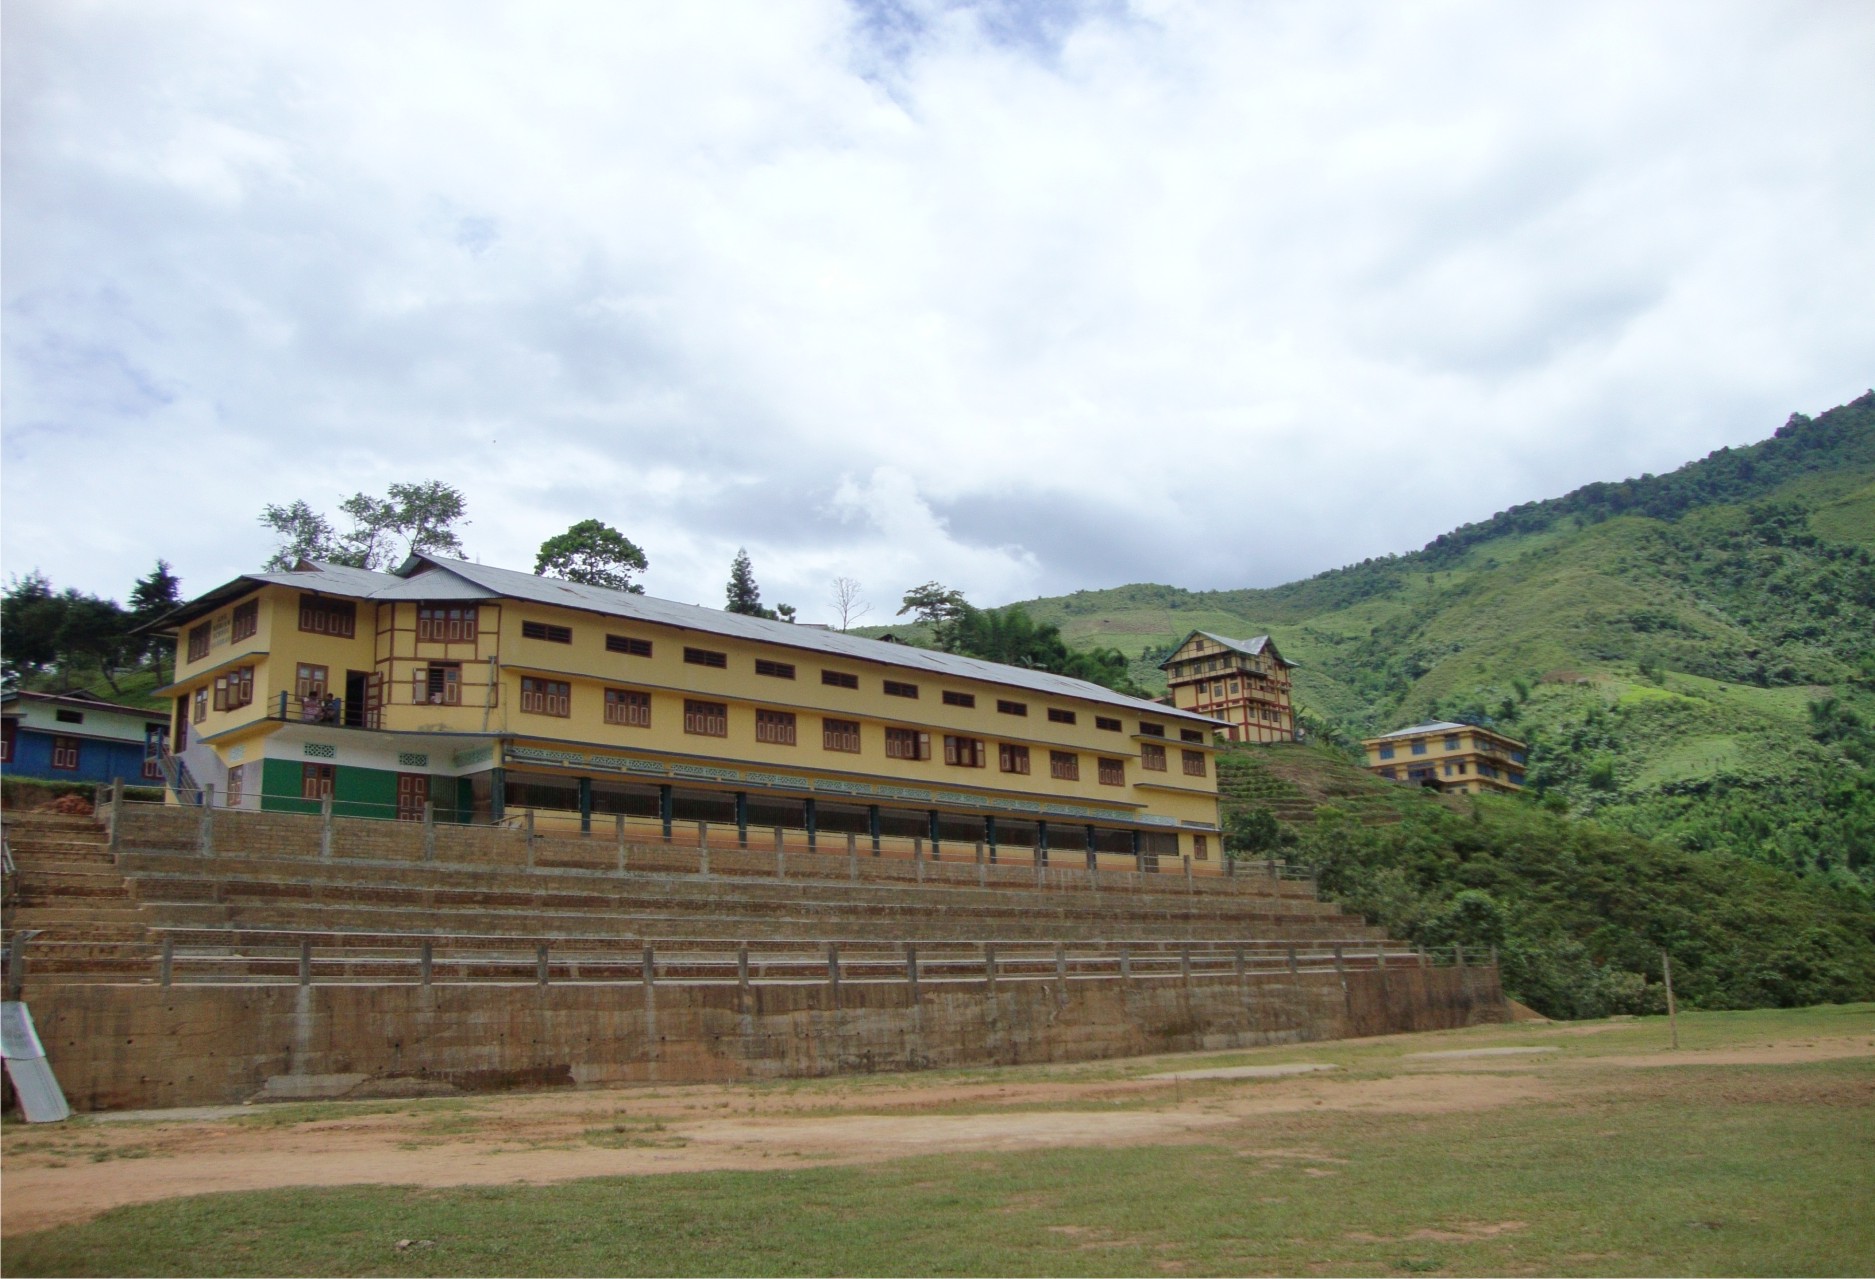 Ane Moriam School, Sangram